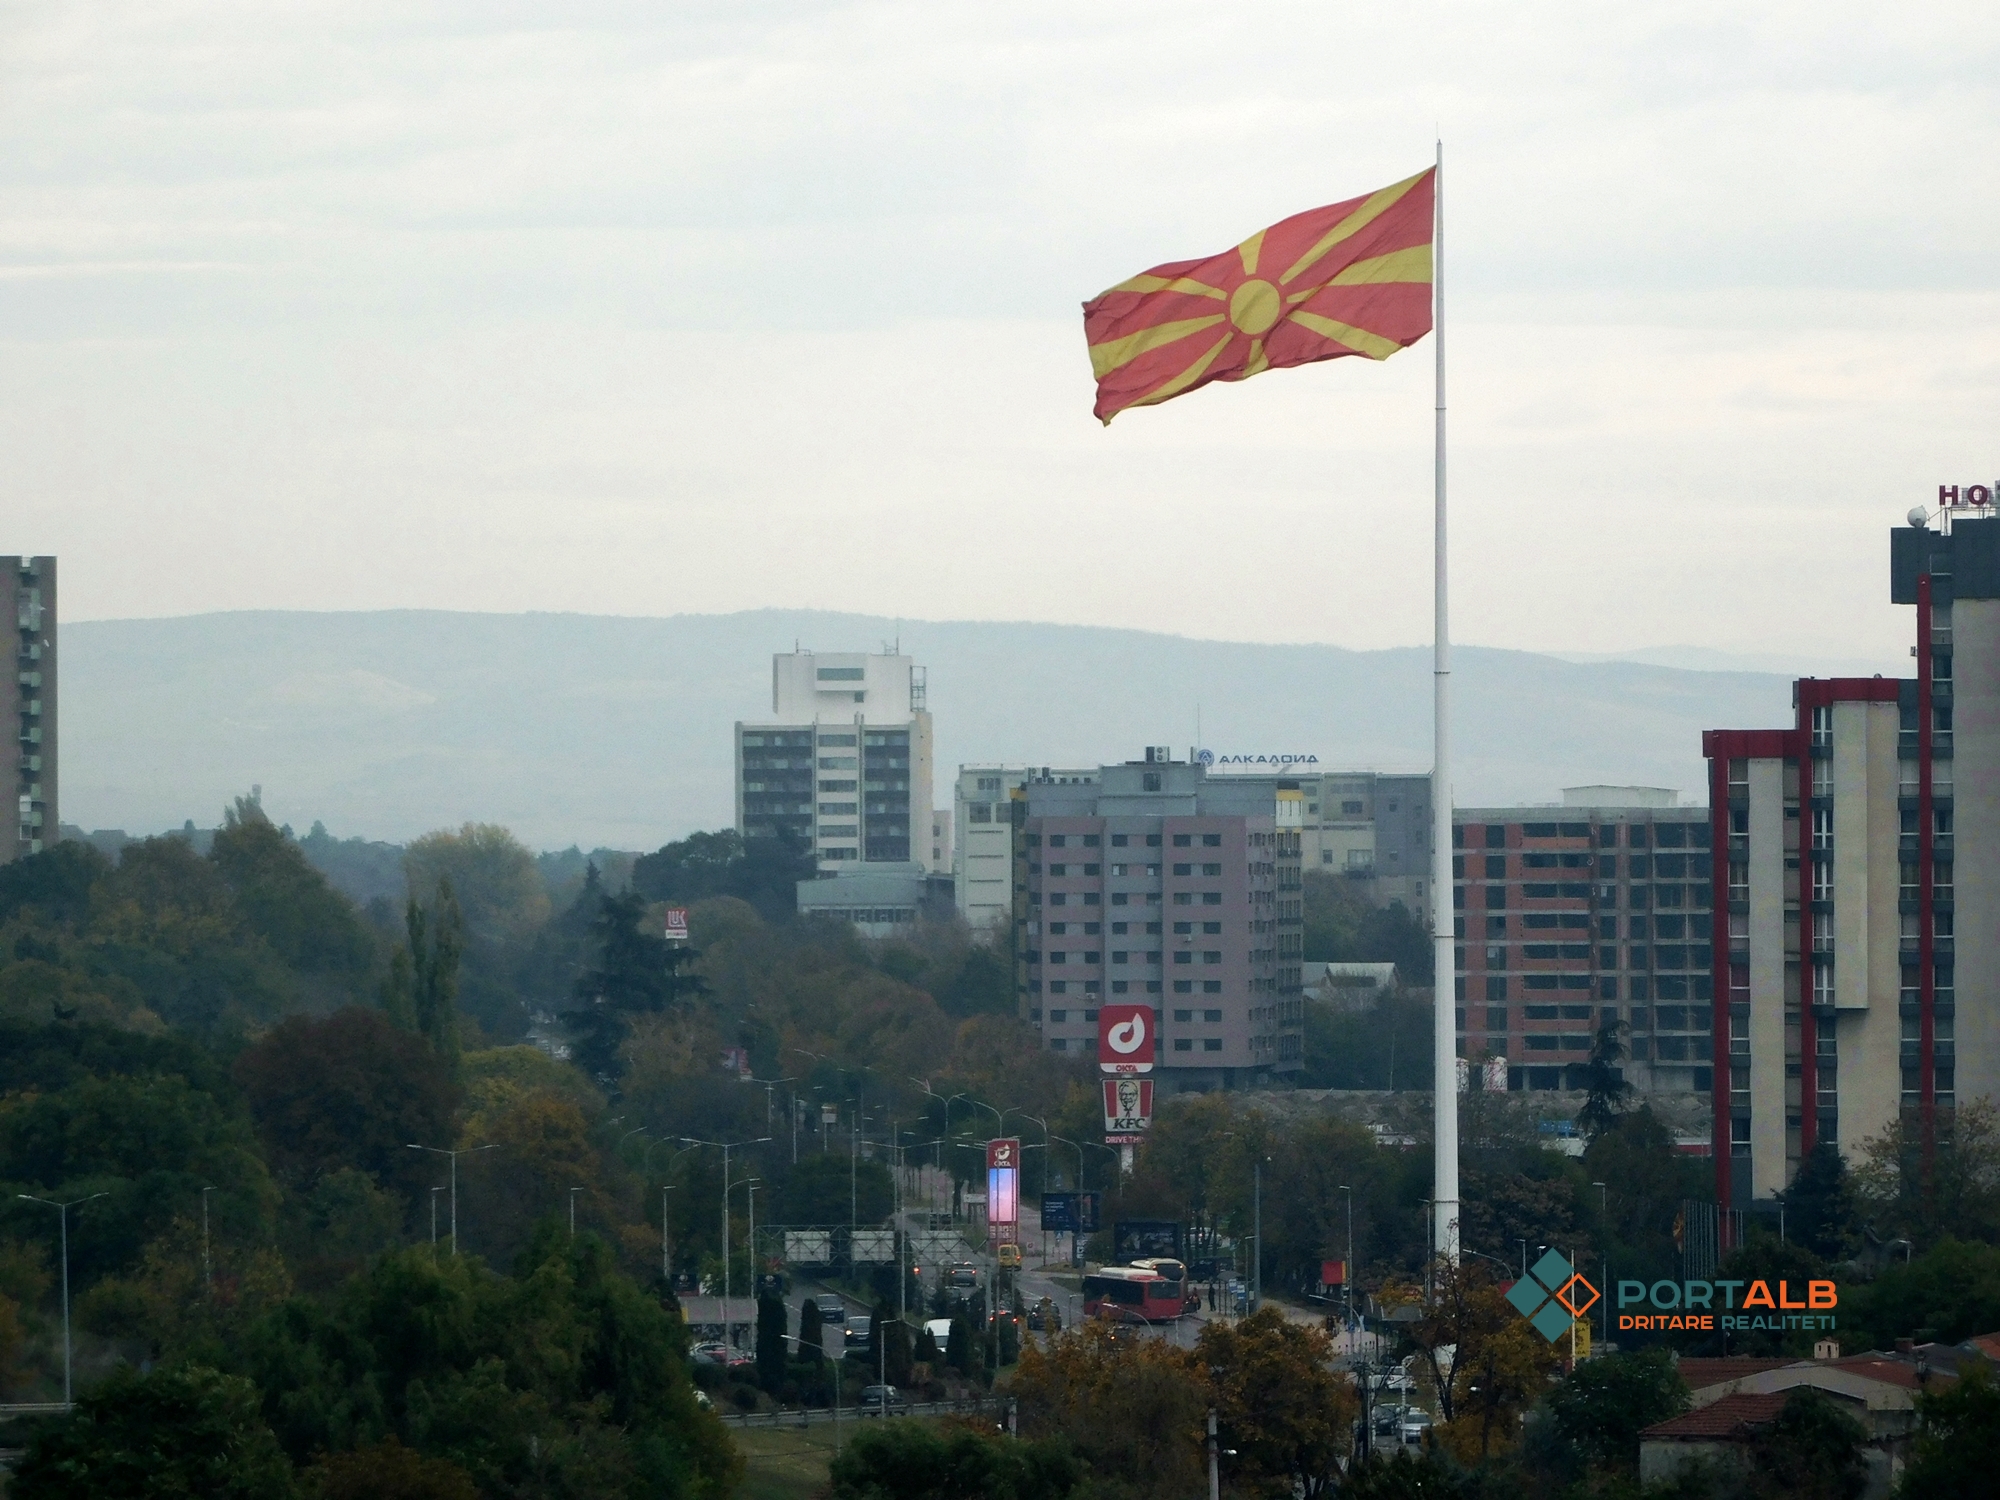 Ndërtime, ndërtesa, banesa, urbanizëm, Shkup, analiza ekonomike, ekonomi, beton, festë, flamuri i Maqedonisë së Veriut